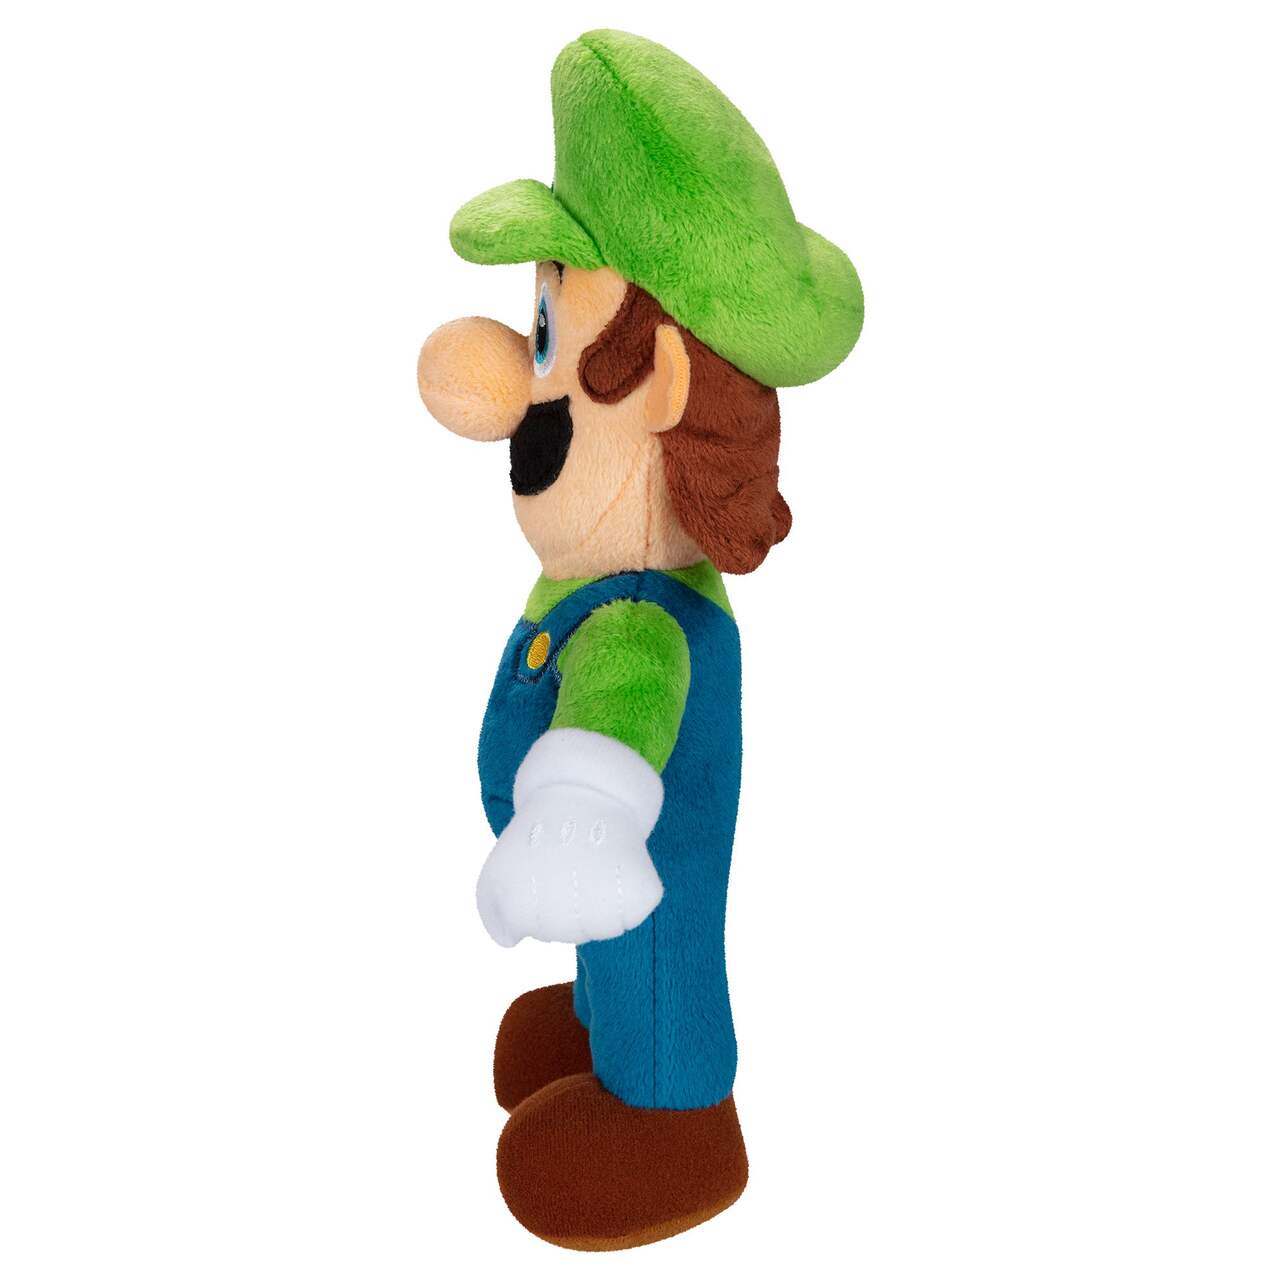 Nintendo Super Mario Plush, 9-in, Ages 3+